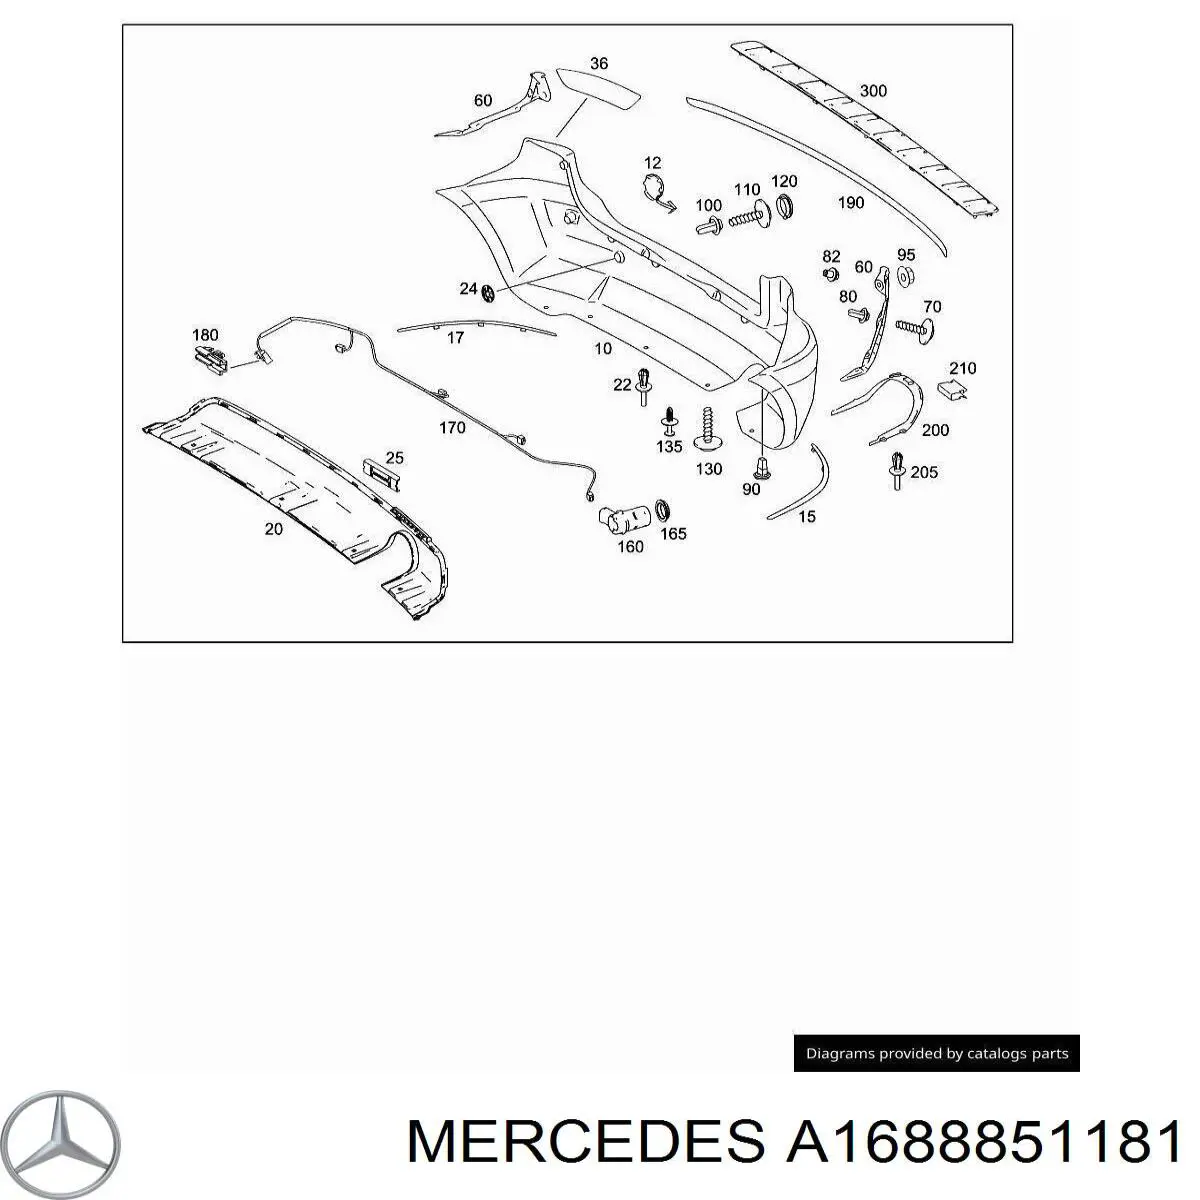 A1688851181 Mercedes cobertura de parachoques, enganche de remolque, trasera